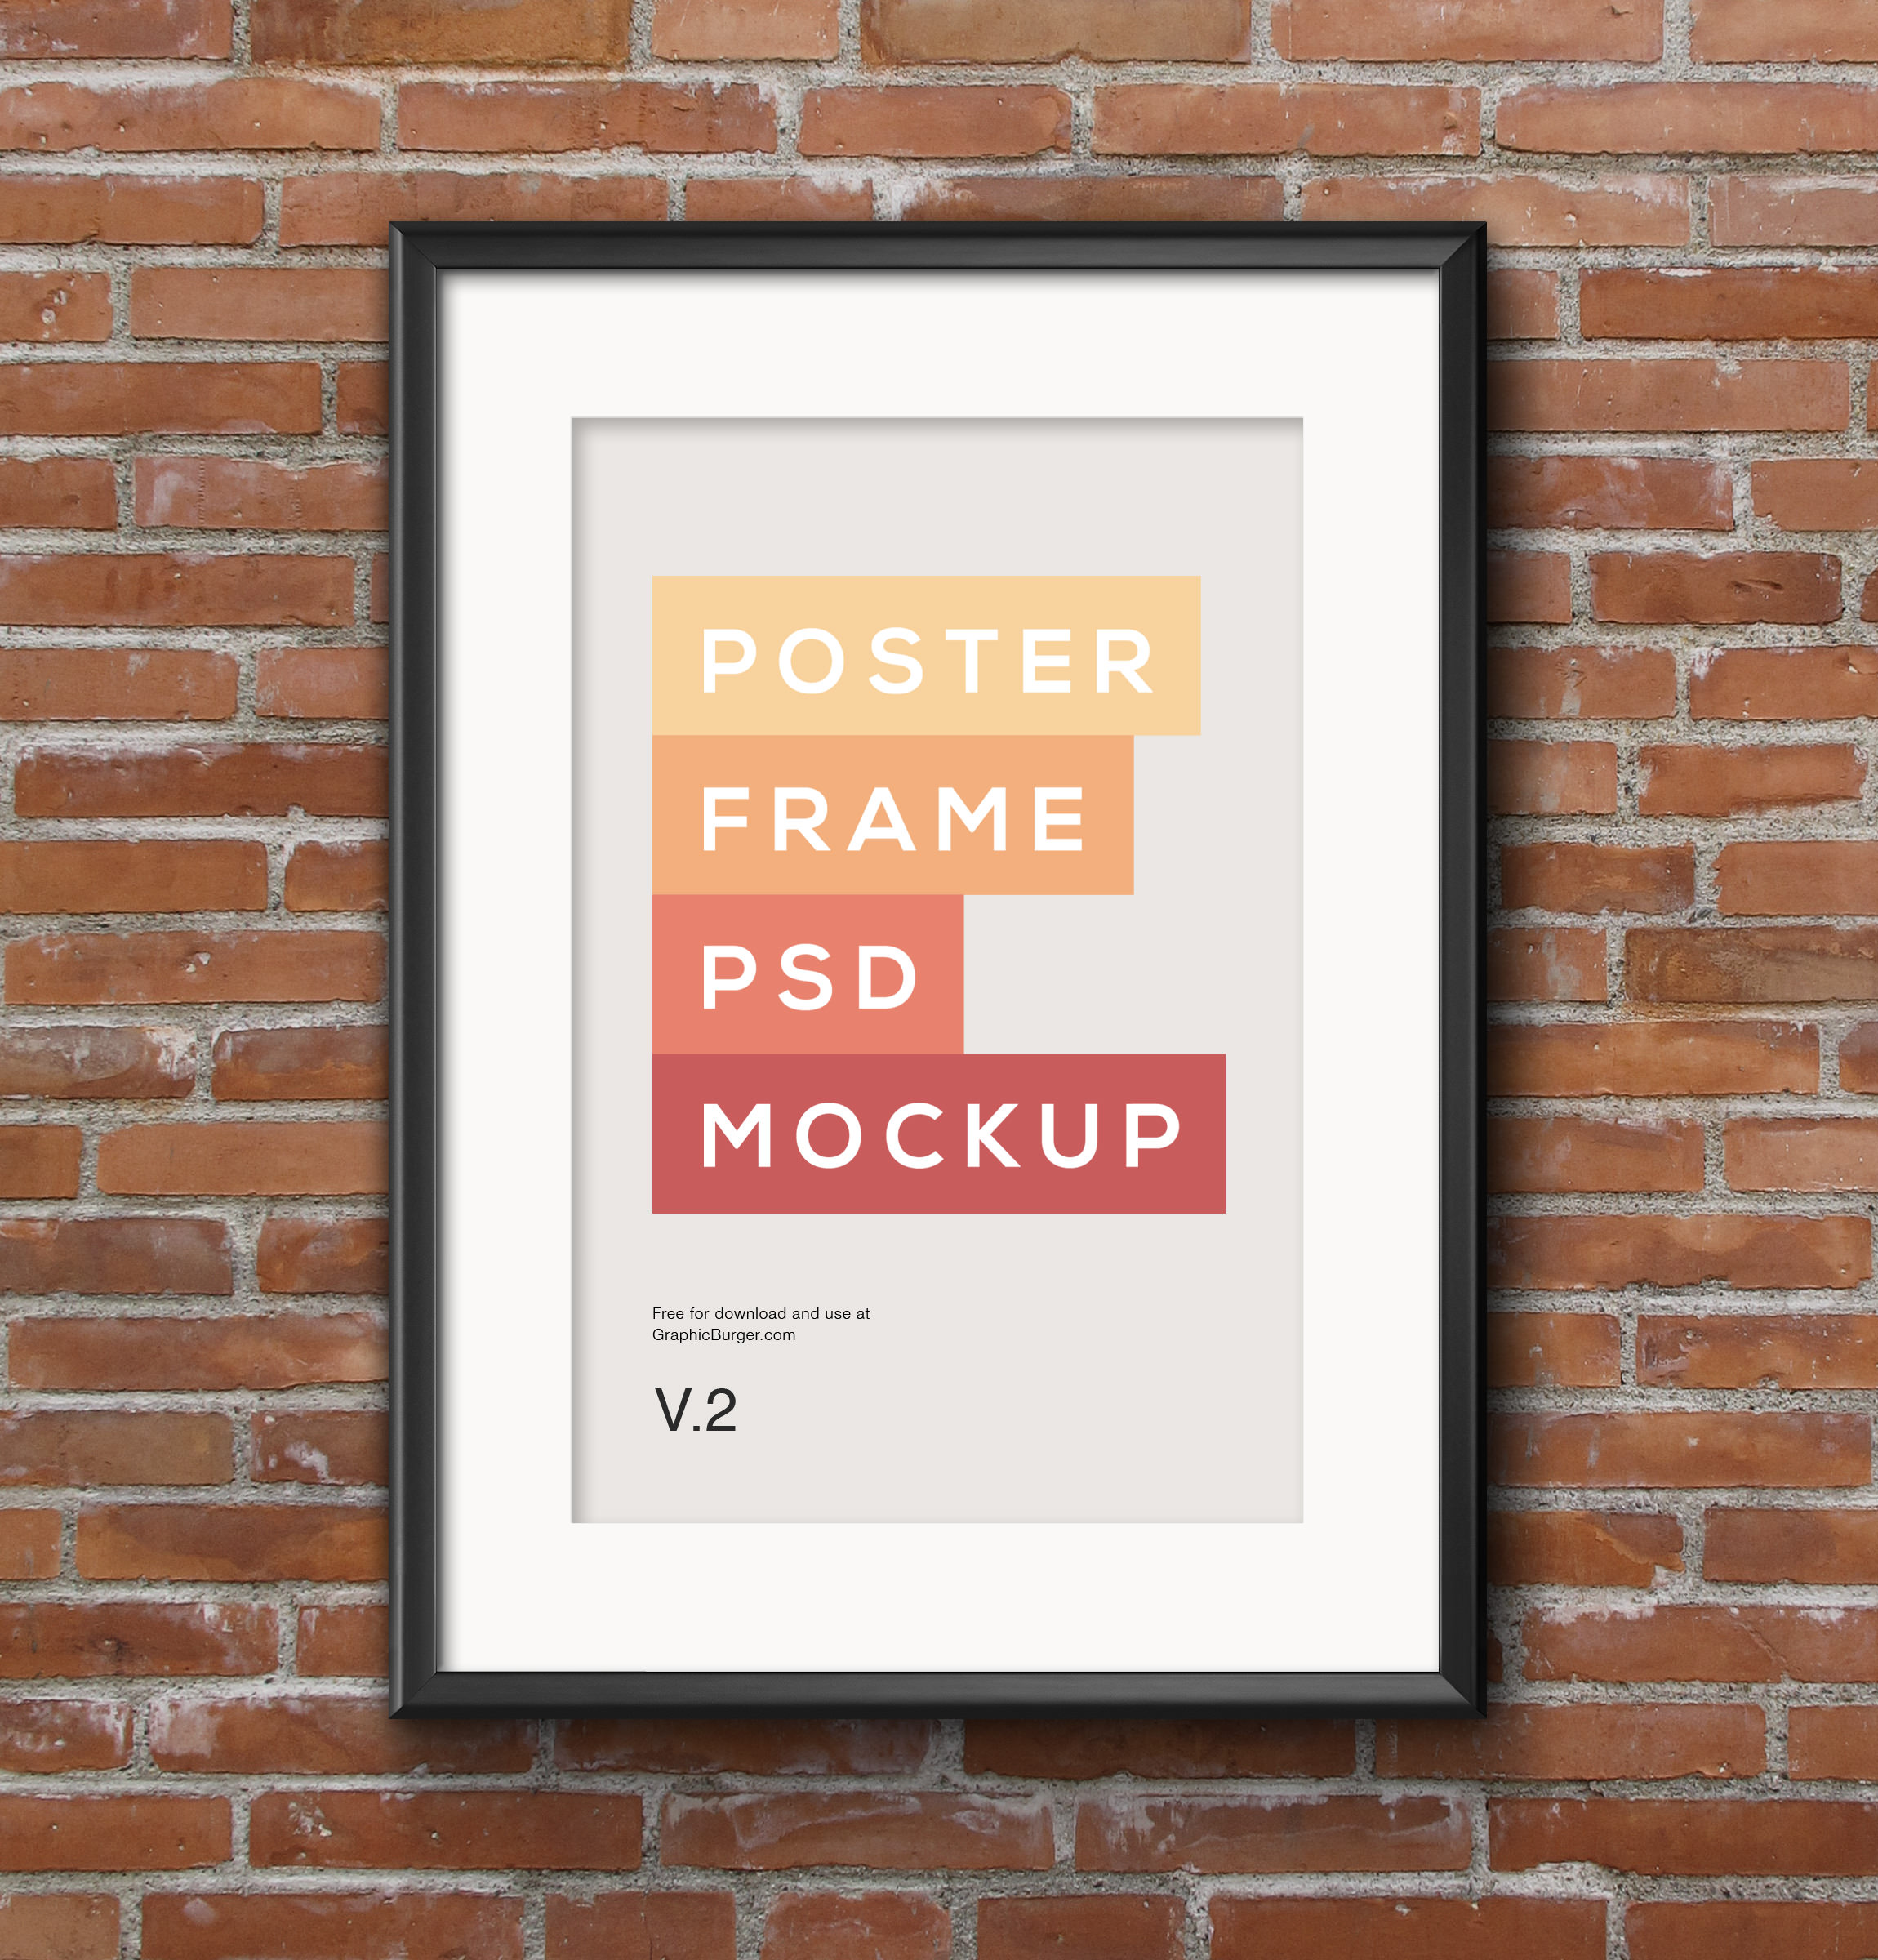 Poster-Frame-PSD-MockUp-2-full